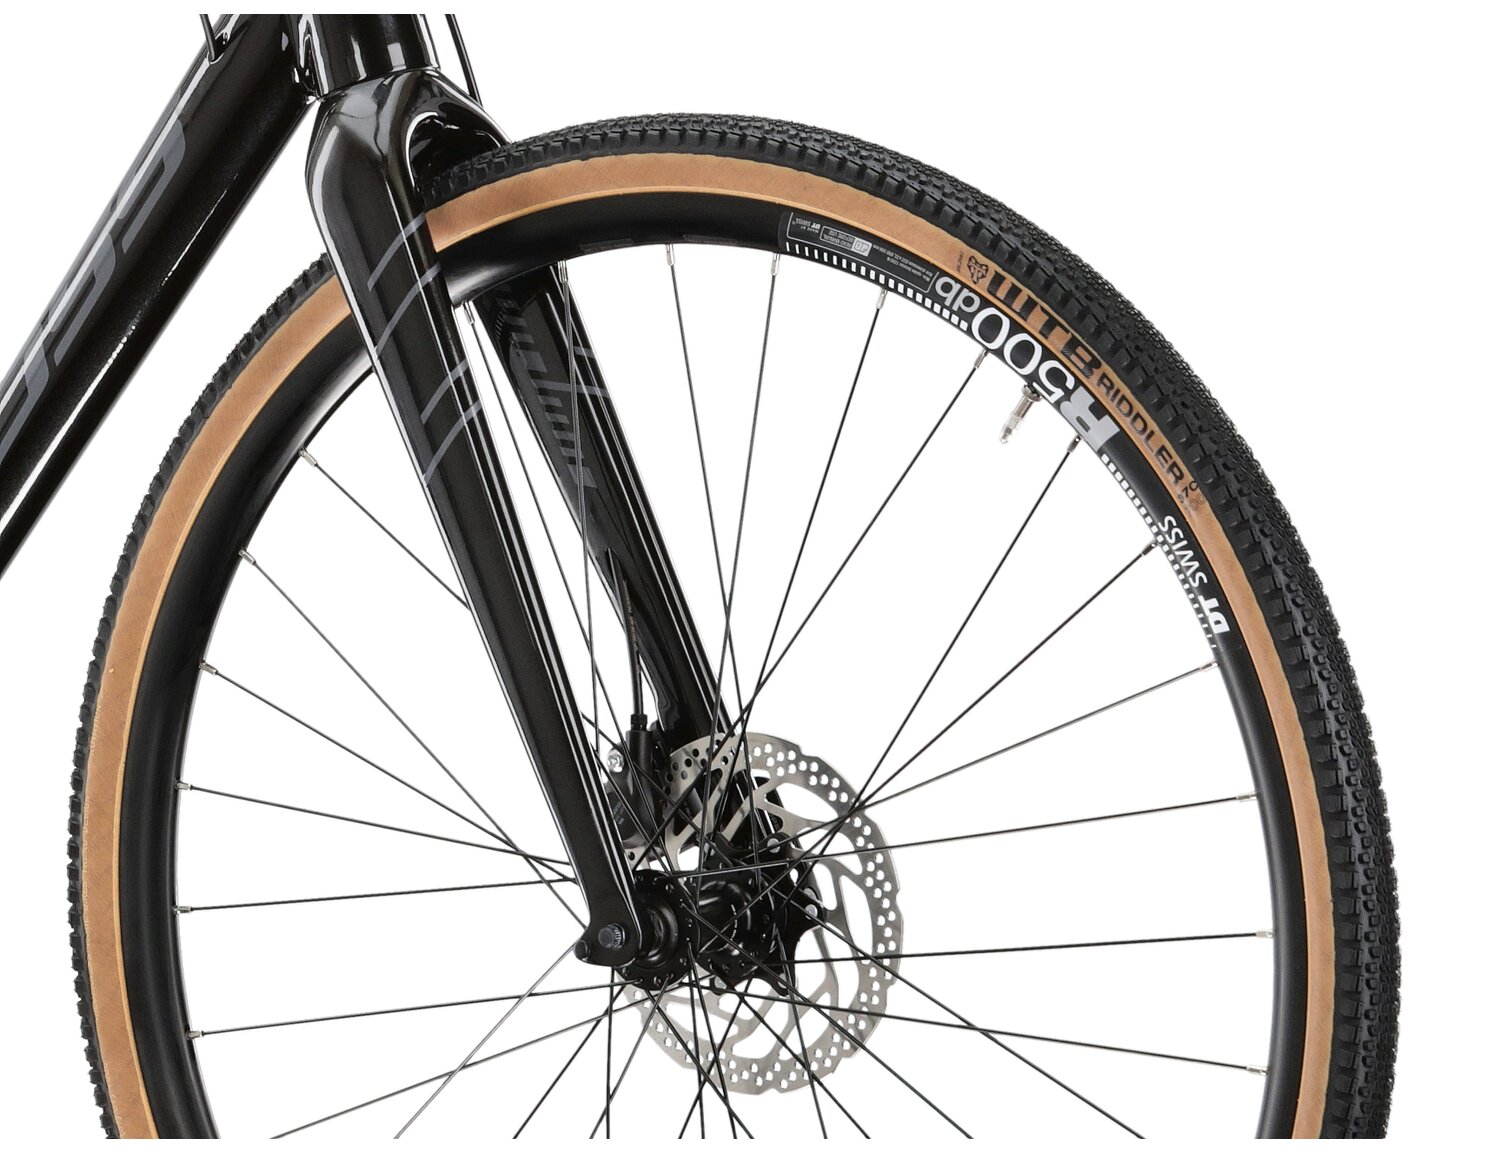  Aluminiowa rama, sztywny carbonowy widelec oraz opony WTB w rowerze gravelowym KROSS Esker 6.0 